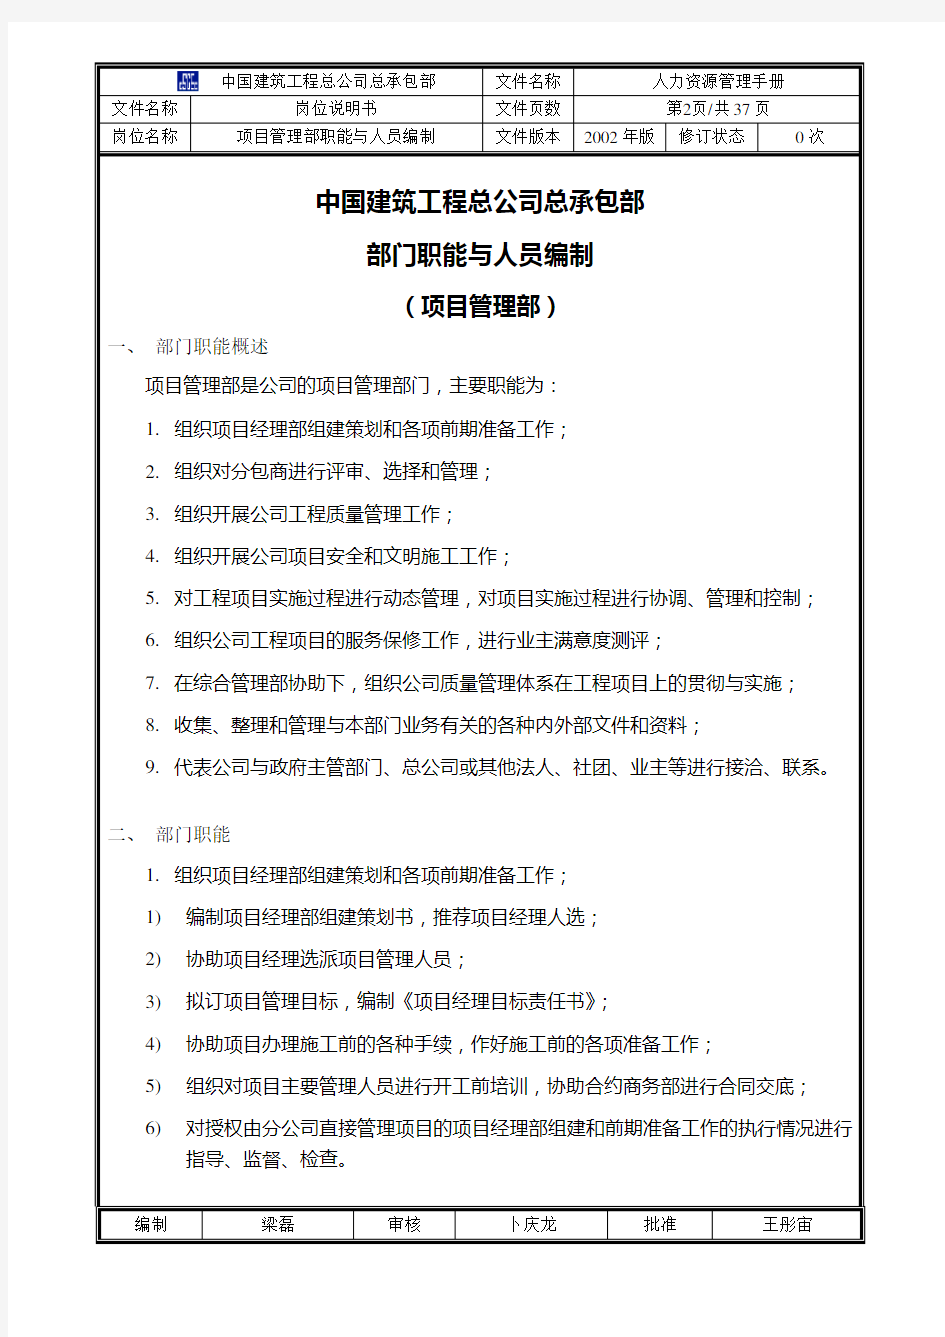 (项目管理)中国建筑工程总公司总承包部部门职能与人员编制(项目管理部)